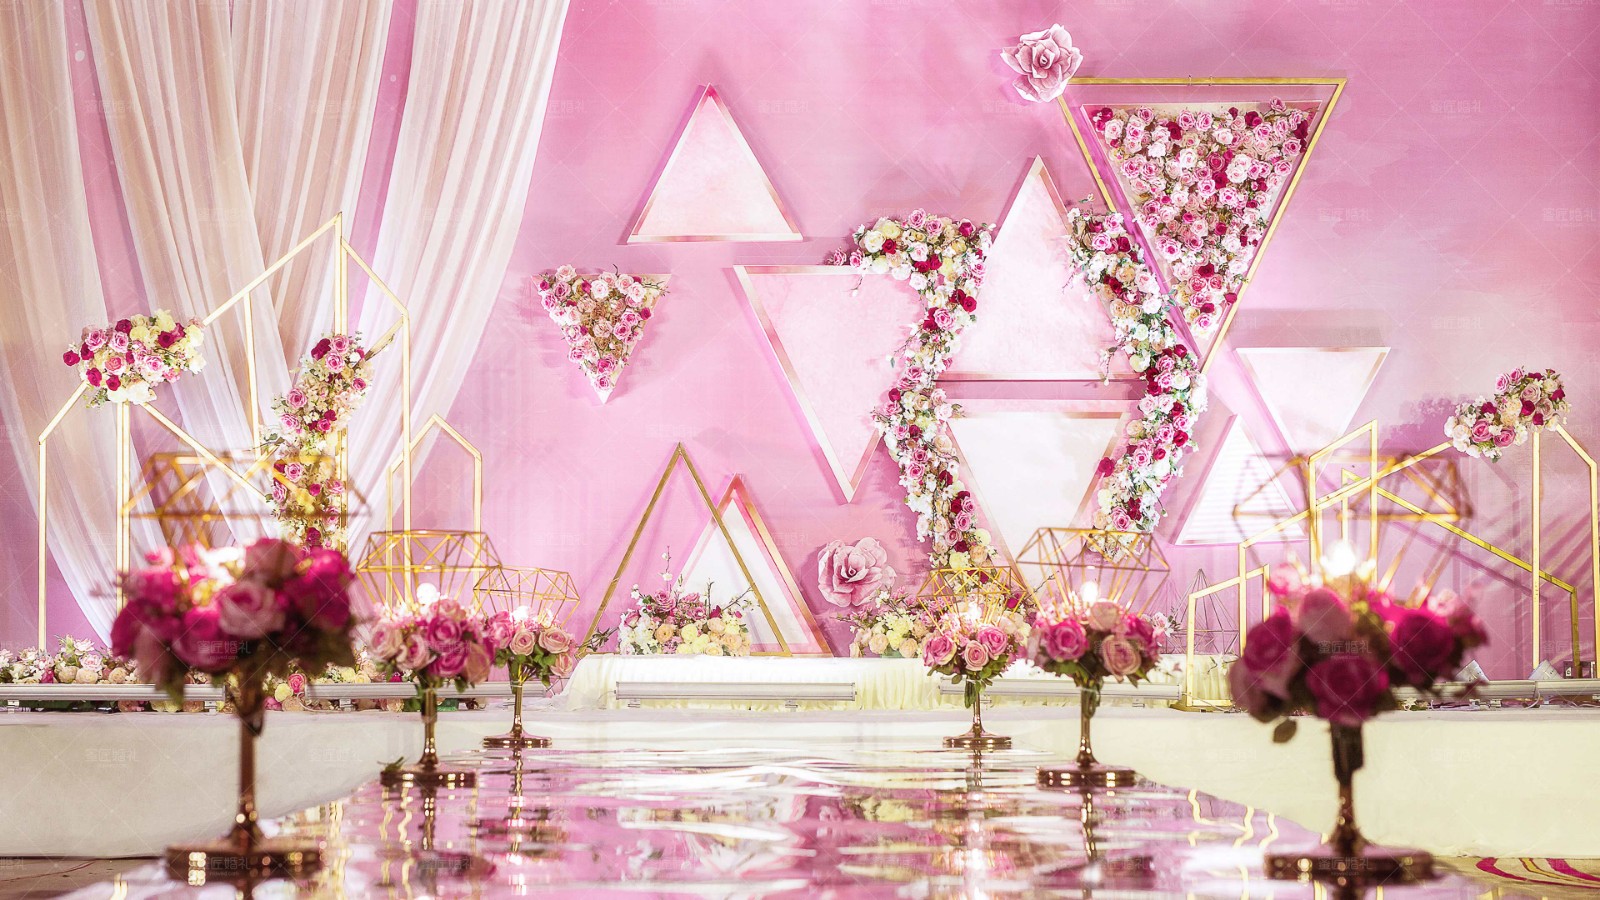 低层高粉嫩韩式粉色主题室内韩式现场布置图片_效果图_策划价格-找我婚礼